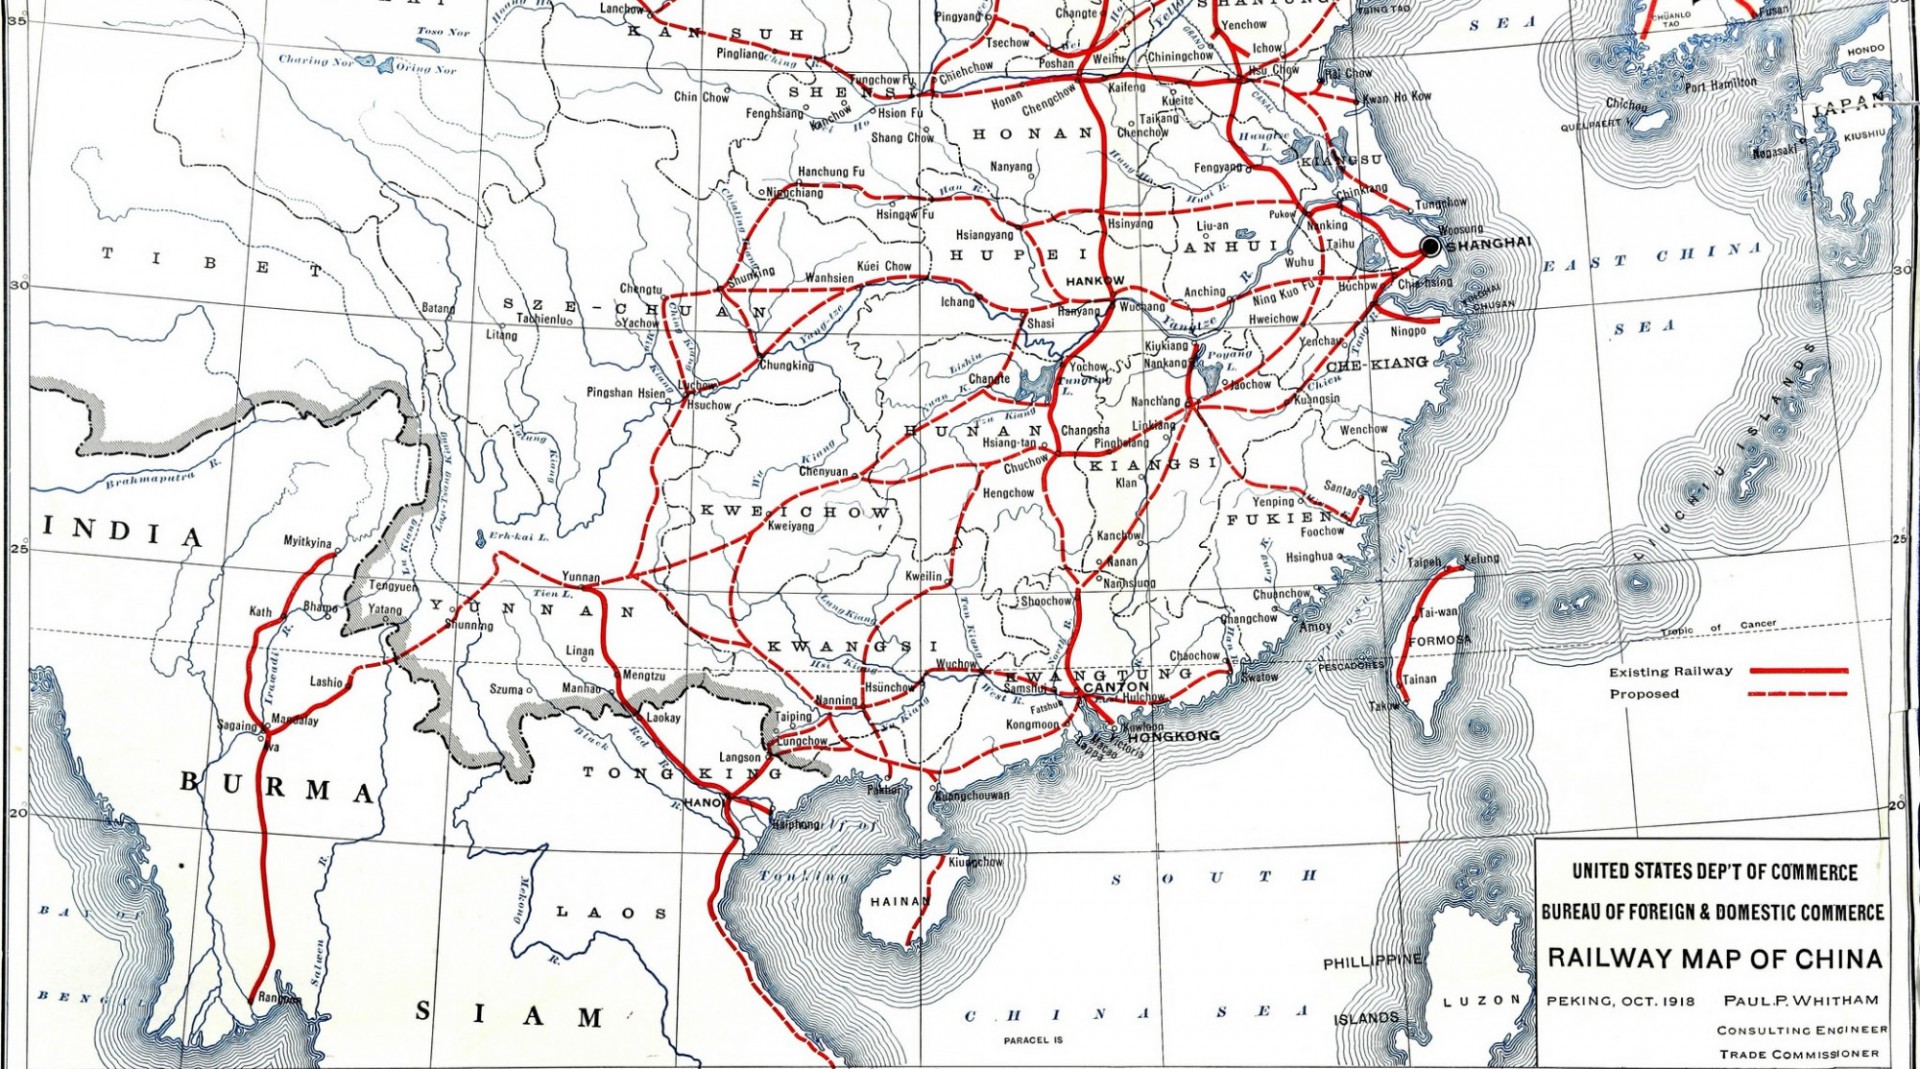 Railway map of China, 1918